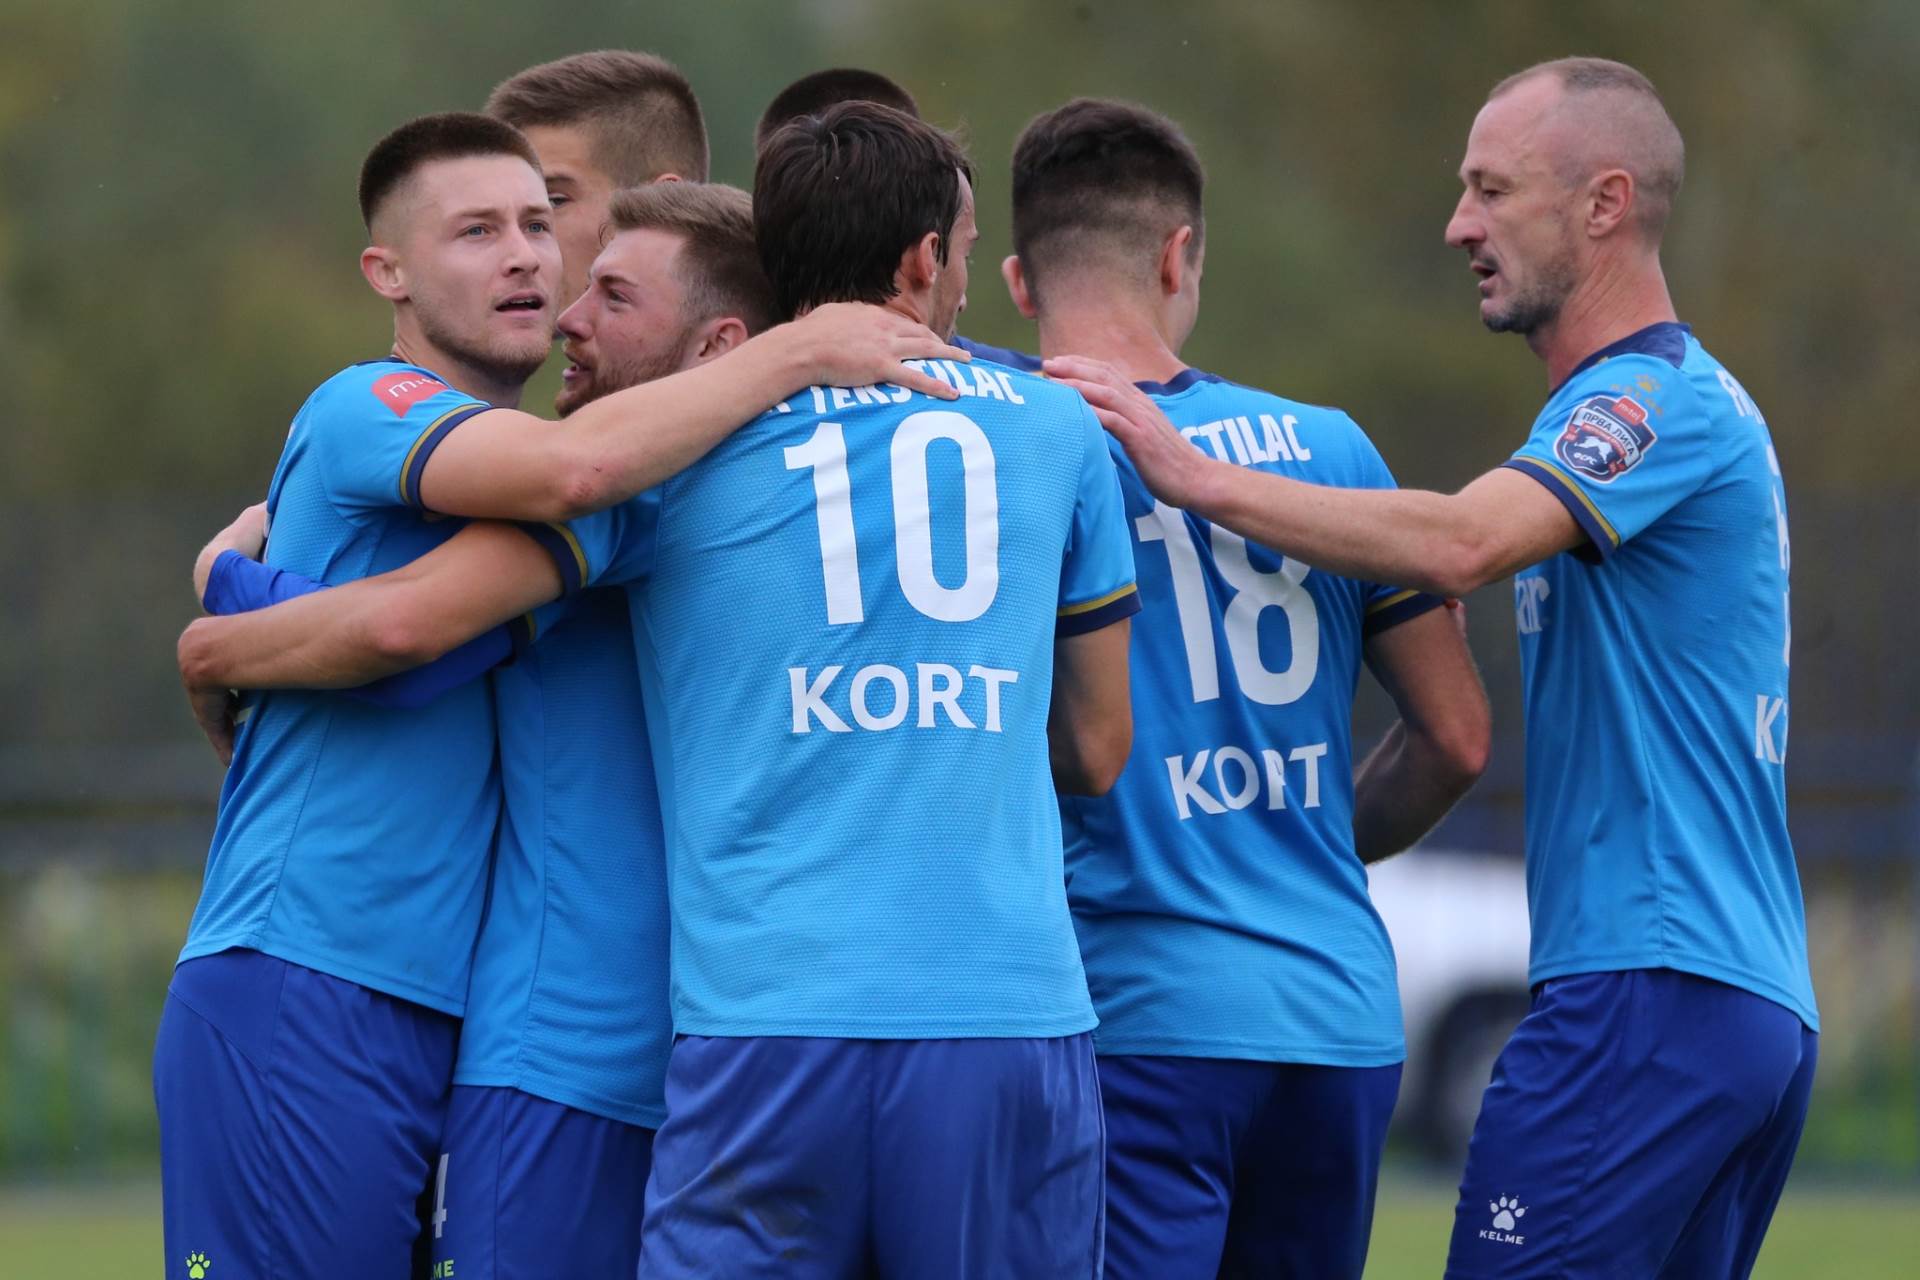  Odigrane utakmice osmine finala Kupa RS, Tekstilac pobijedio Leotar 3:0 